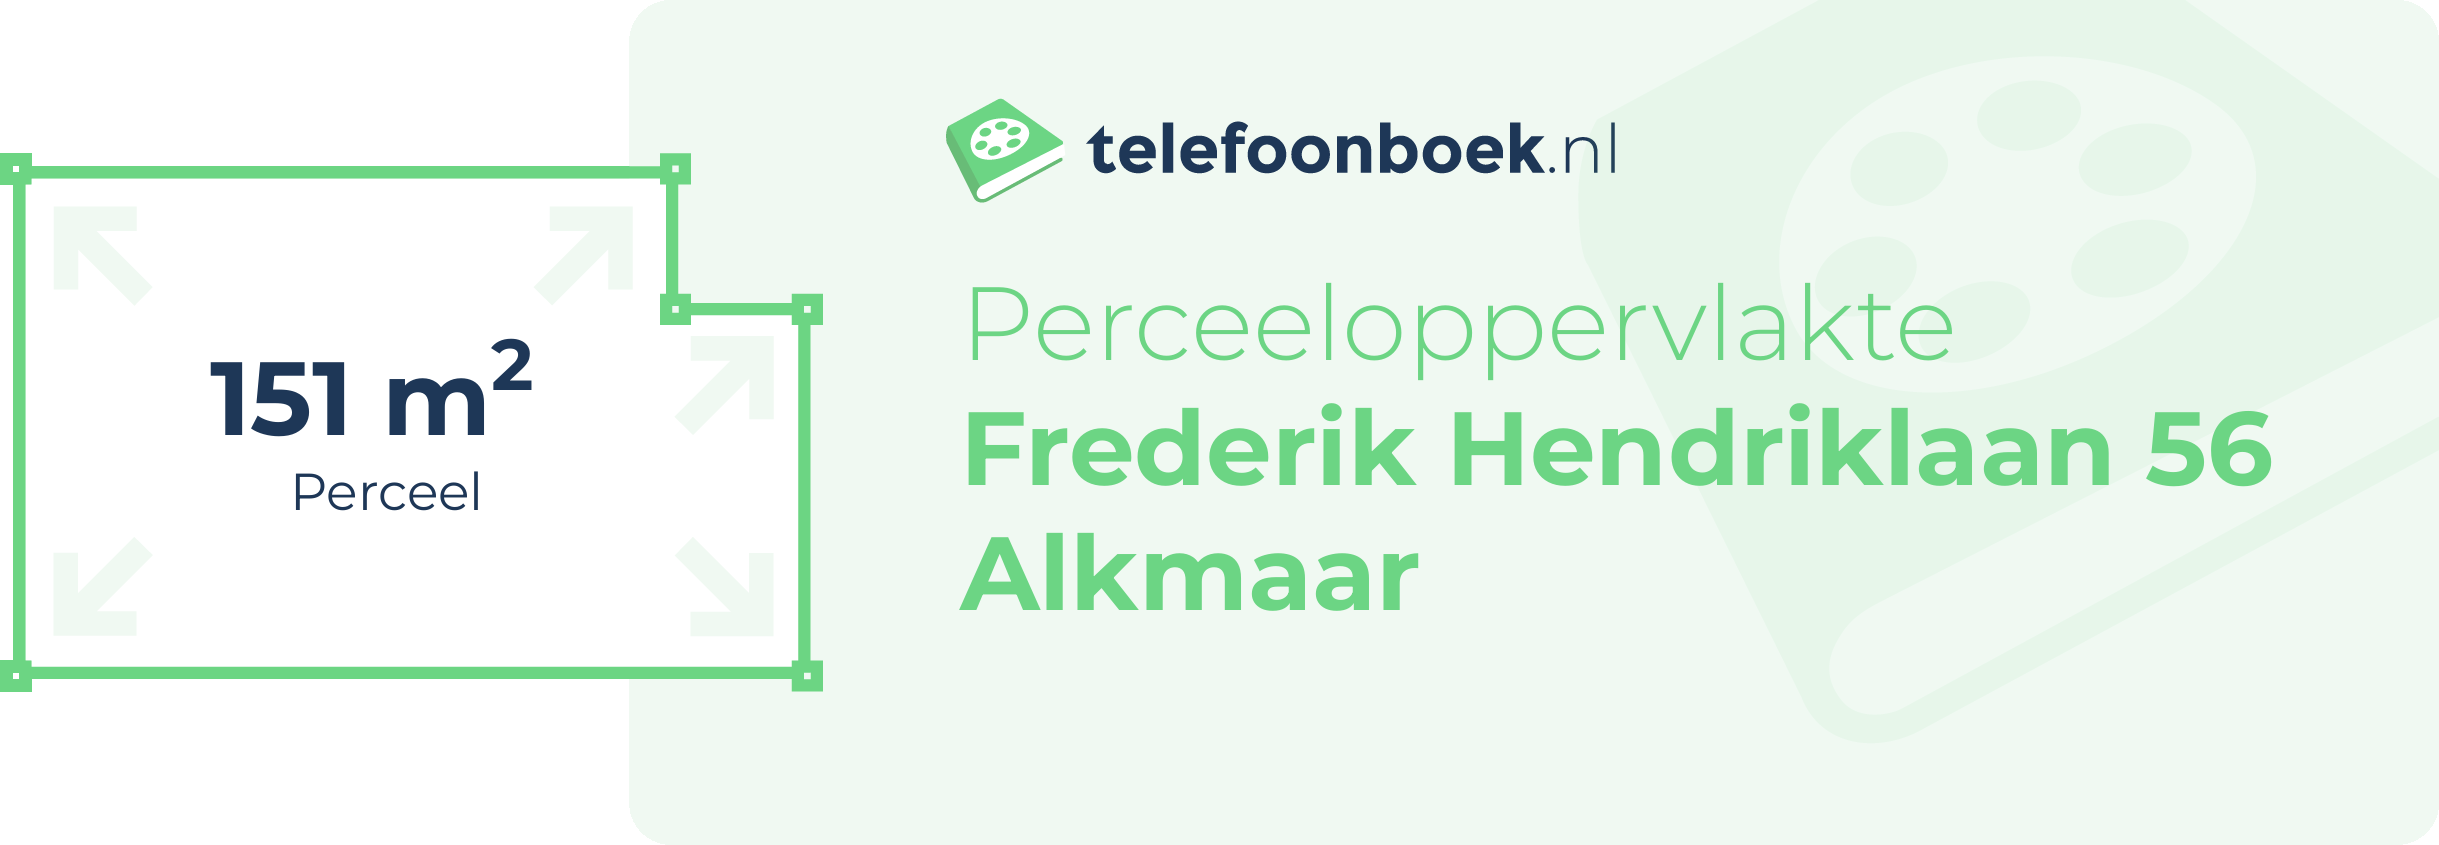 Perceeloppervlakte Frederik Hendriklaan 56 Alkmaar